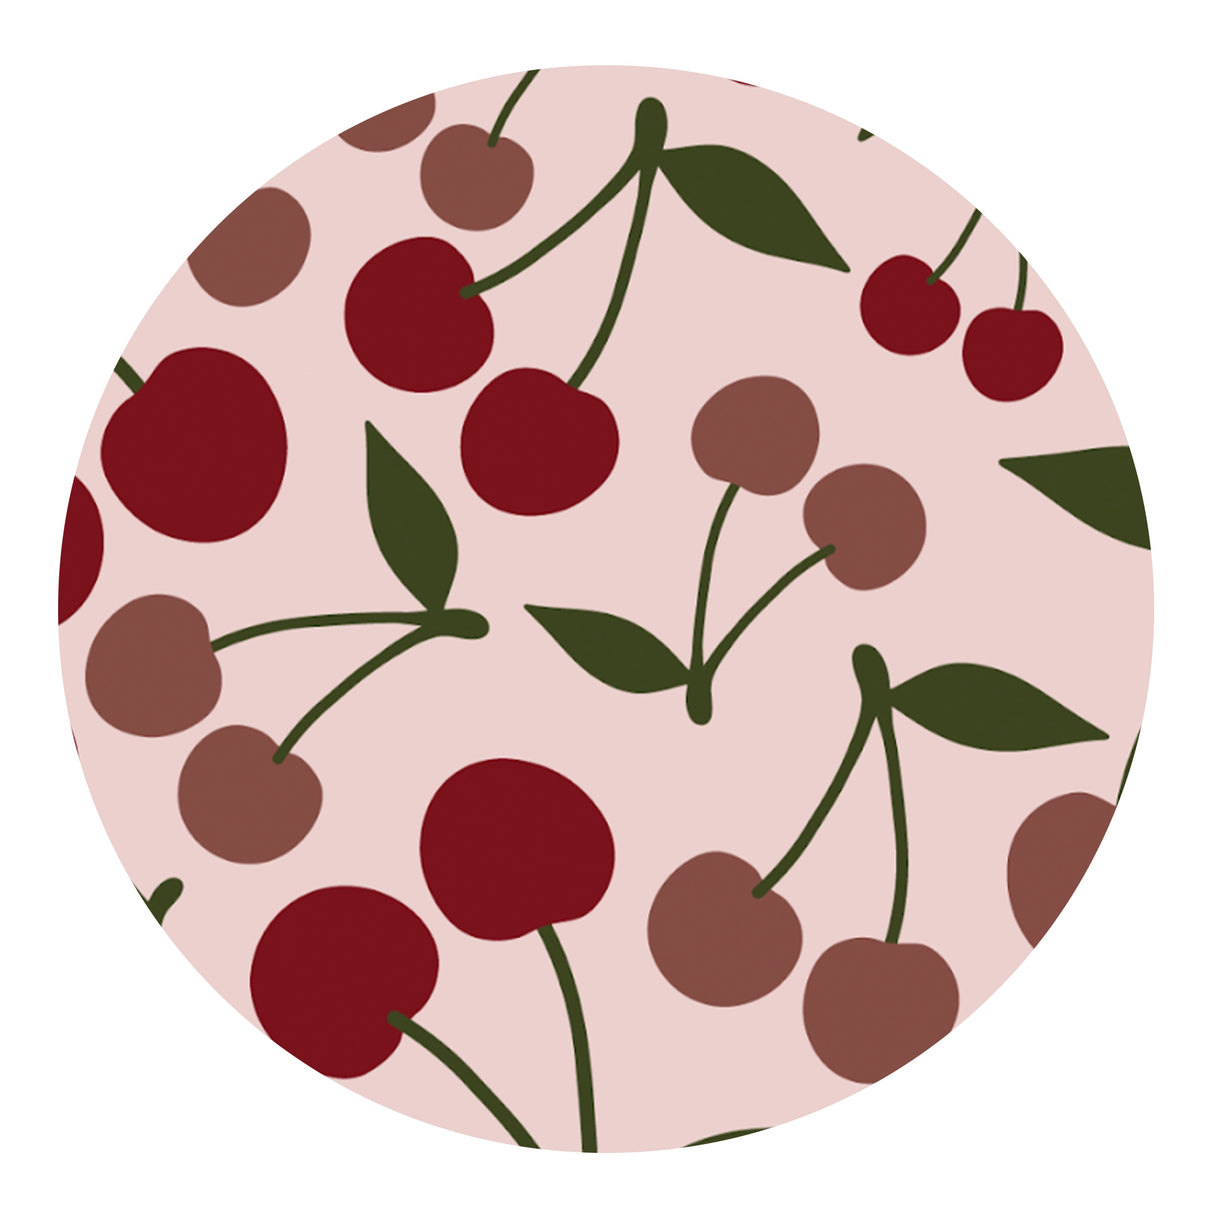 Cherries Sublimation Paper Print